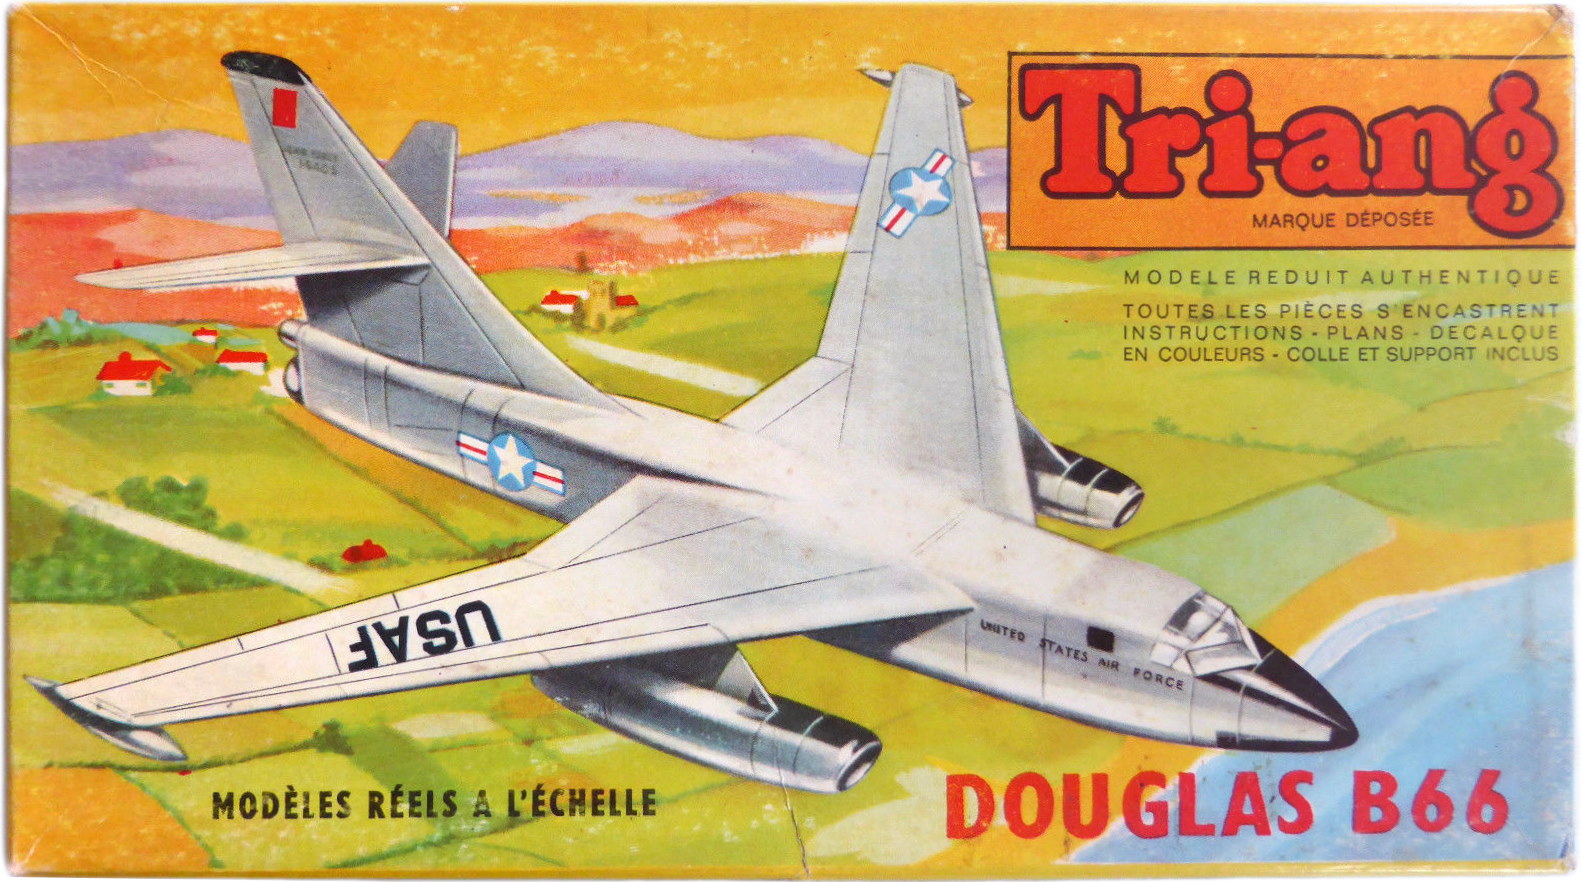 Коробка Tri-ang 379P Douglas B-66, Lines Frères S.A. Calais, 1963